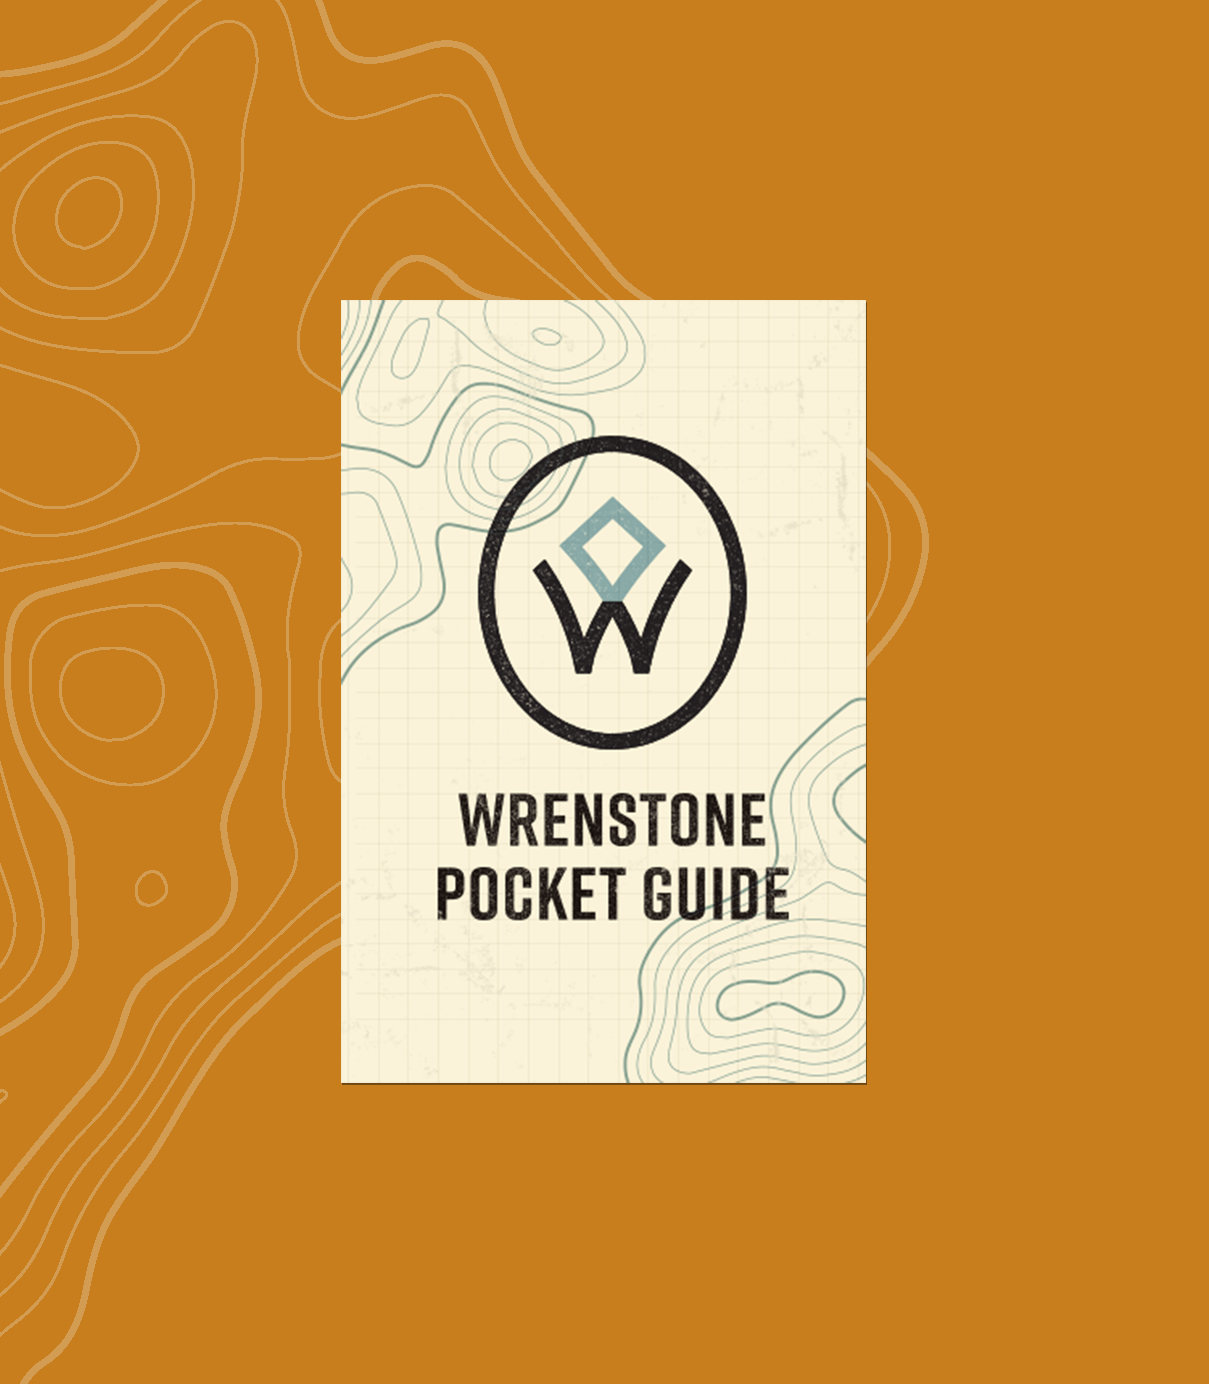 Wrenstone pocket guide brochure front on an orange background